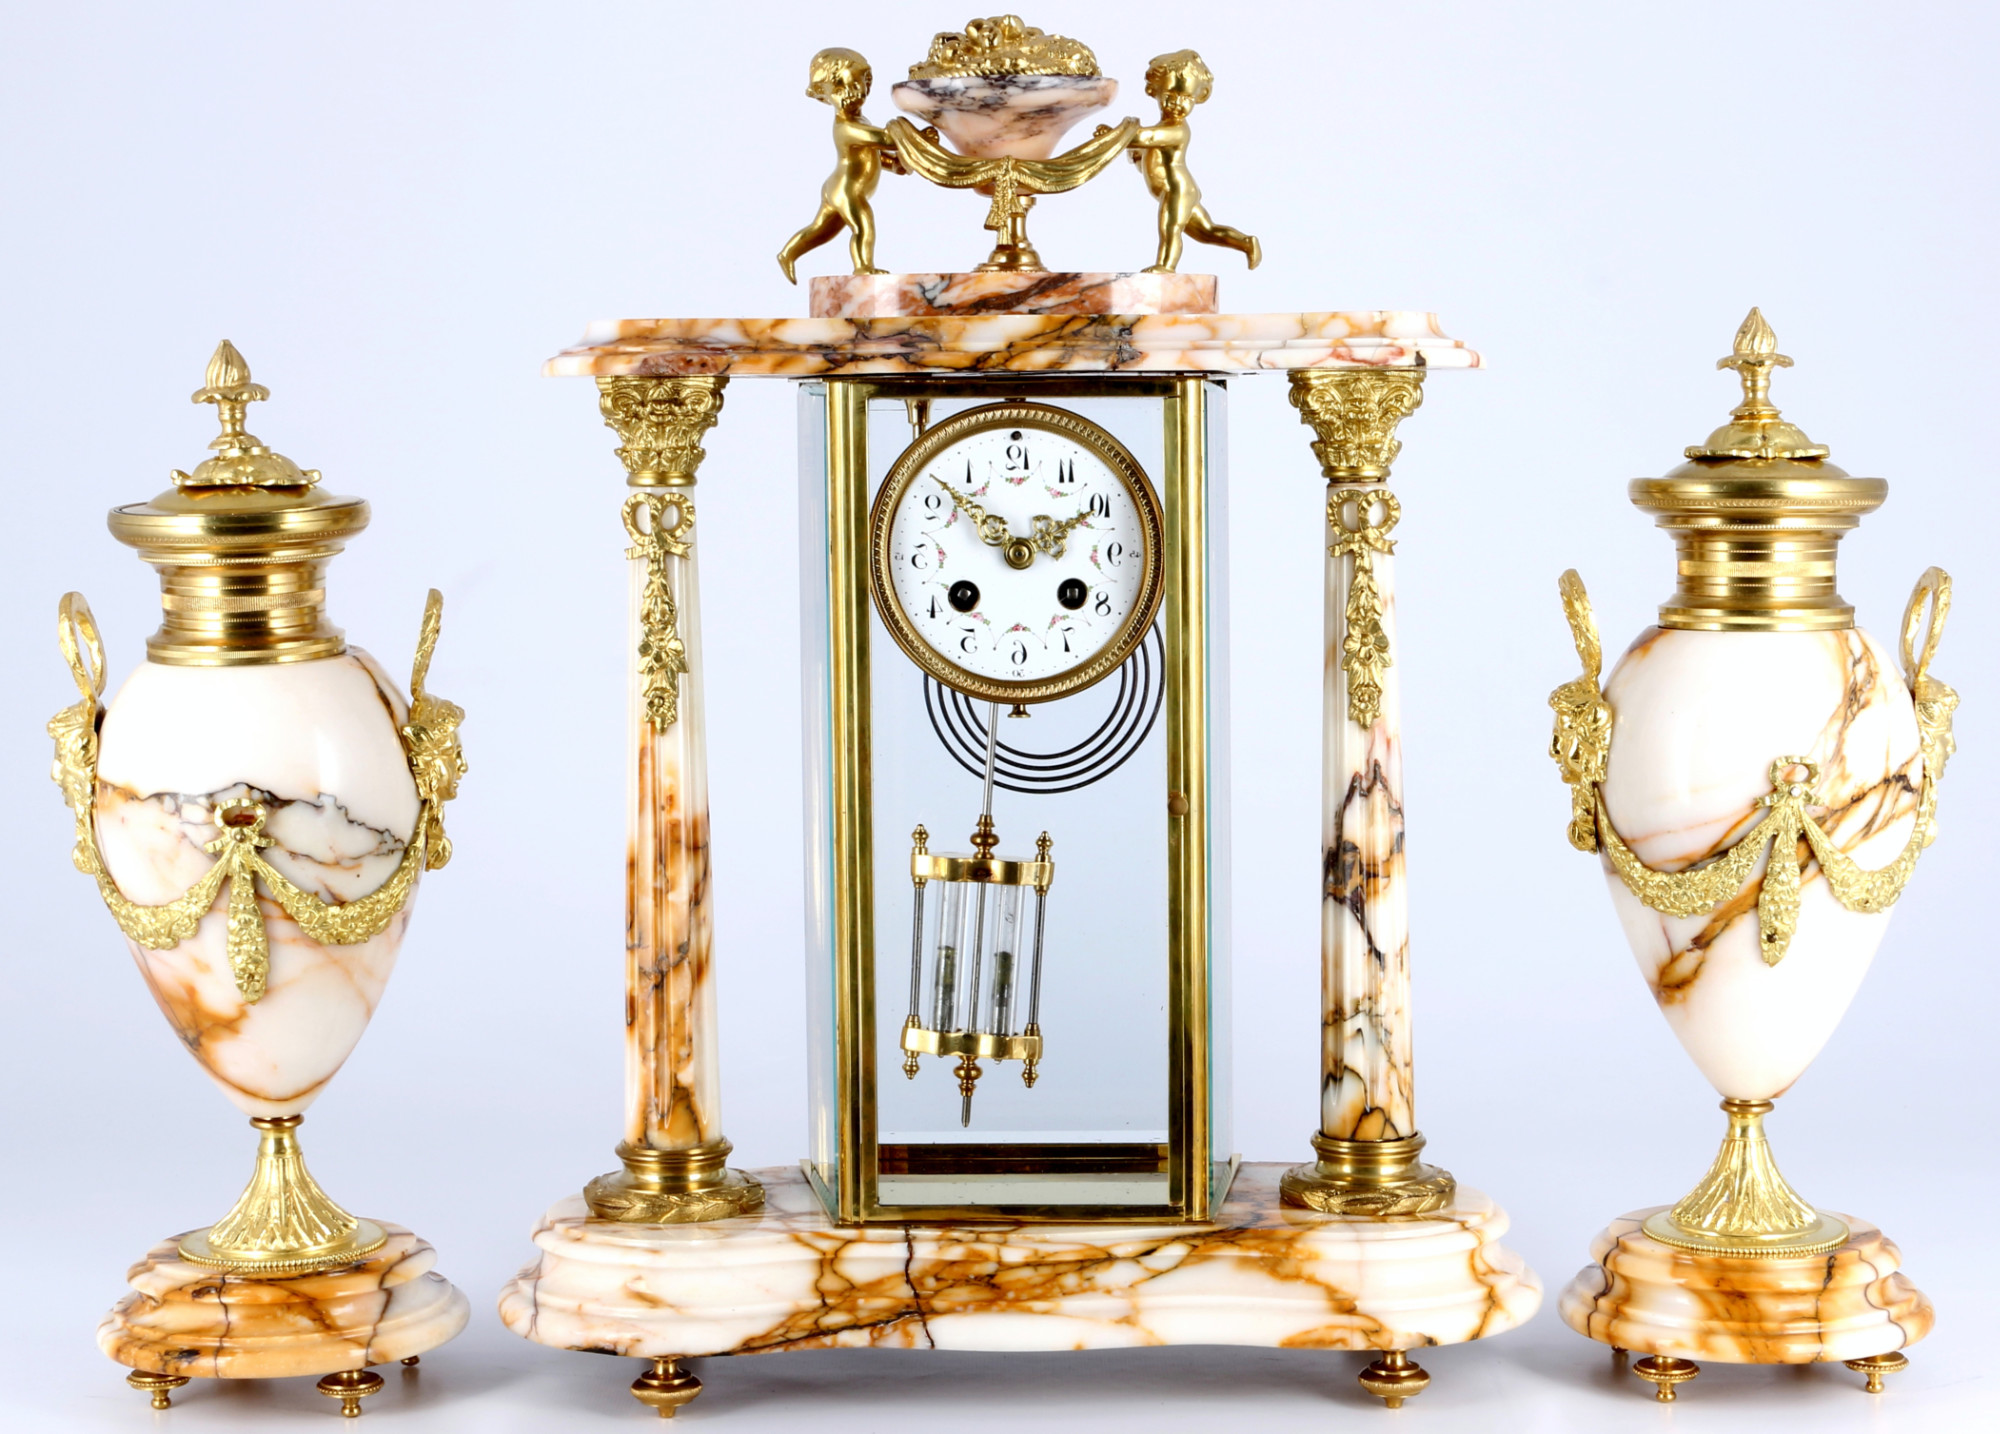 French glas mantel clock 19th century, Glaspendule mit Beisteller Frankreich 19. Jahrhundert,